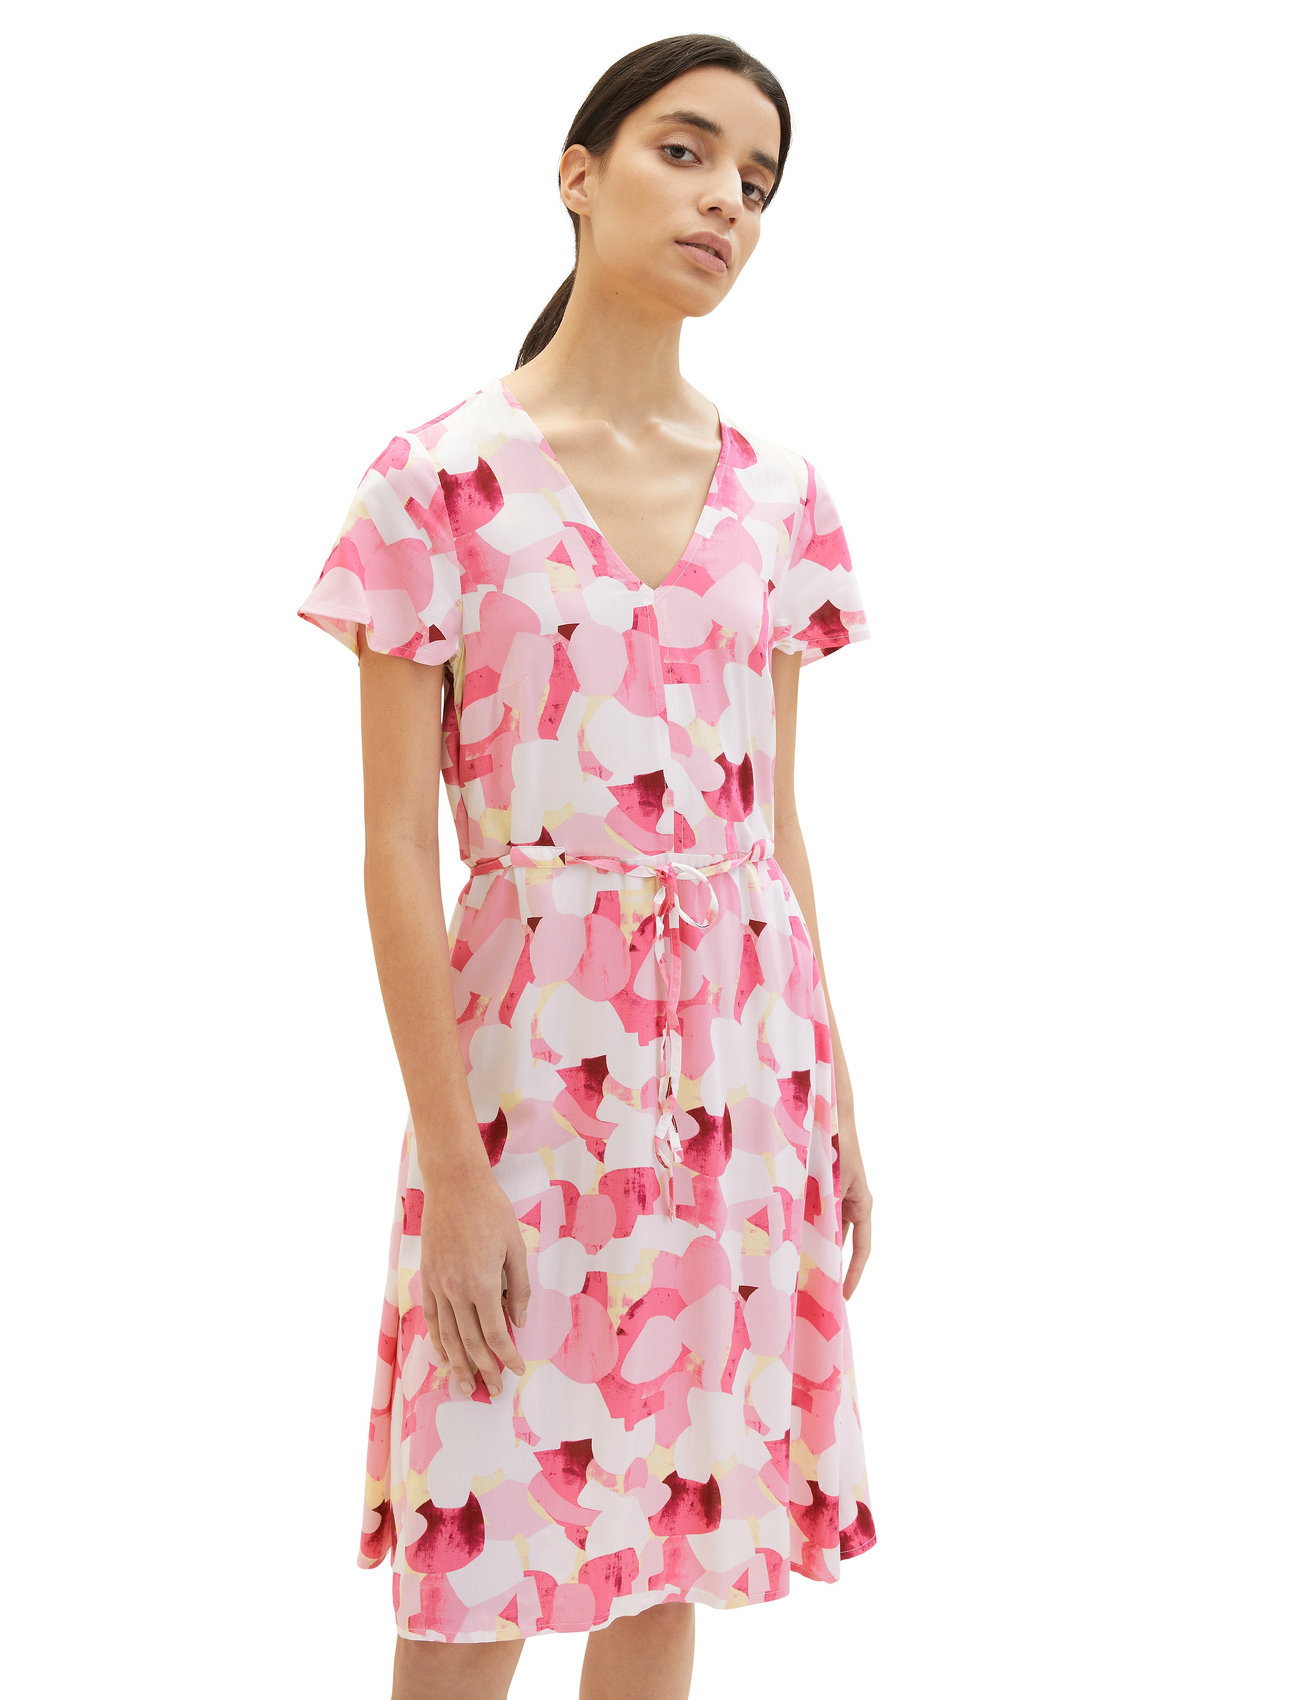 Tom Tailor - printed dress with belt - wickelkleider - pink shapes design - 1